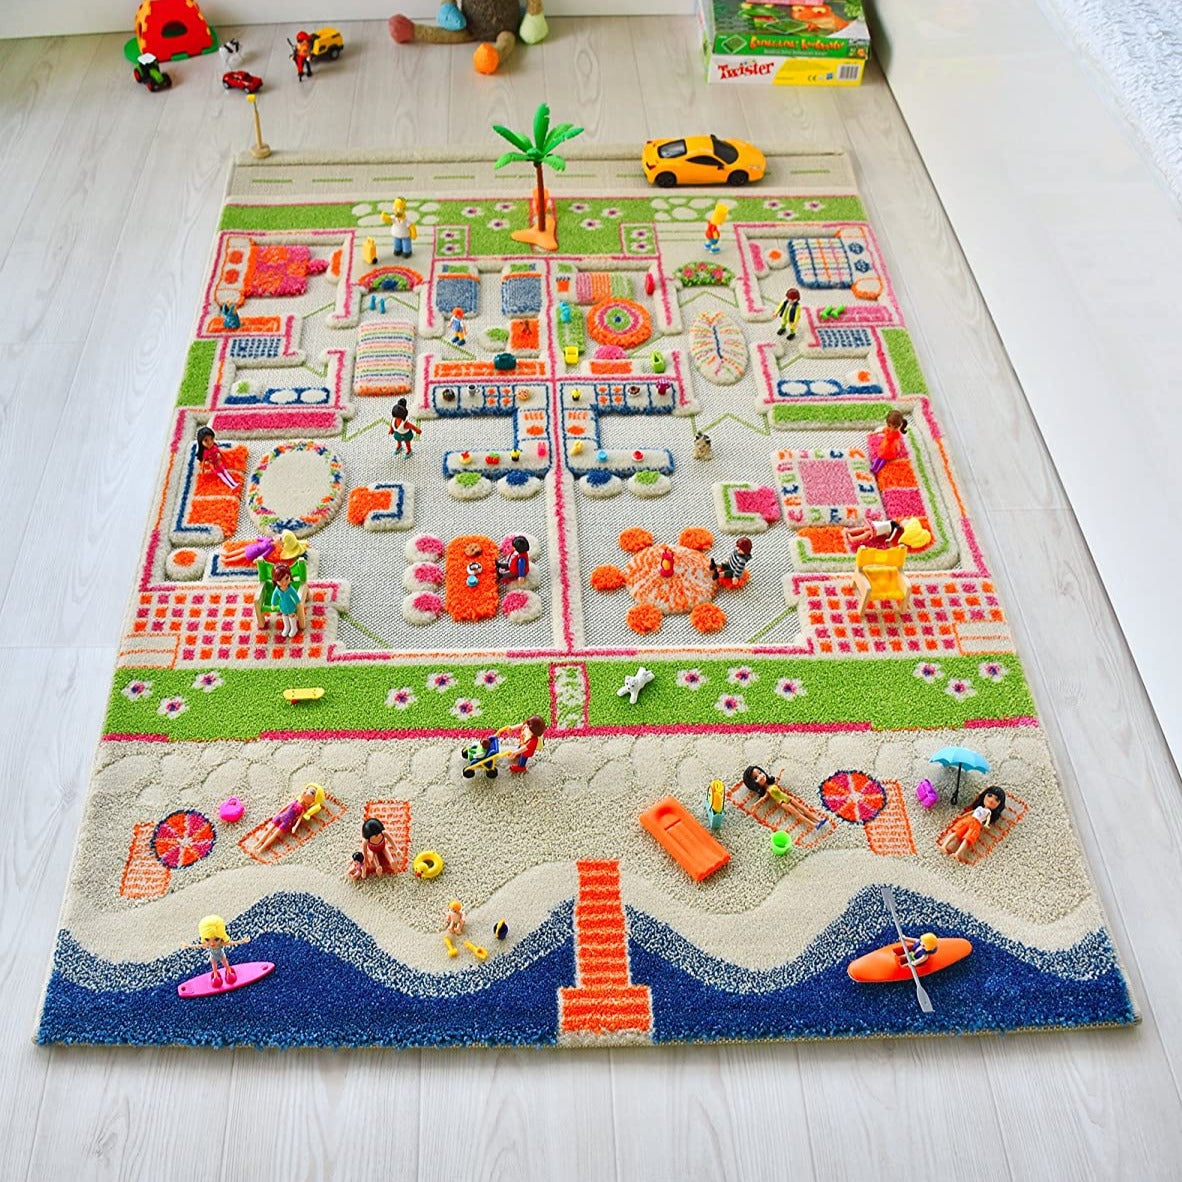 IVI 3D Play Carpet, Playhouse design - Medium Size (150cm x 100cm) - Neo Essentials Store